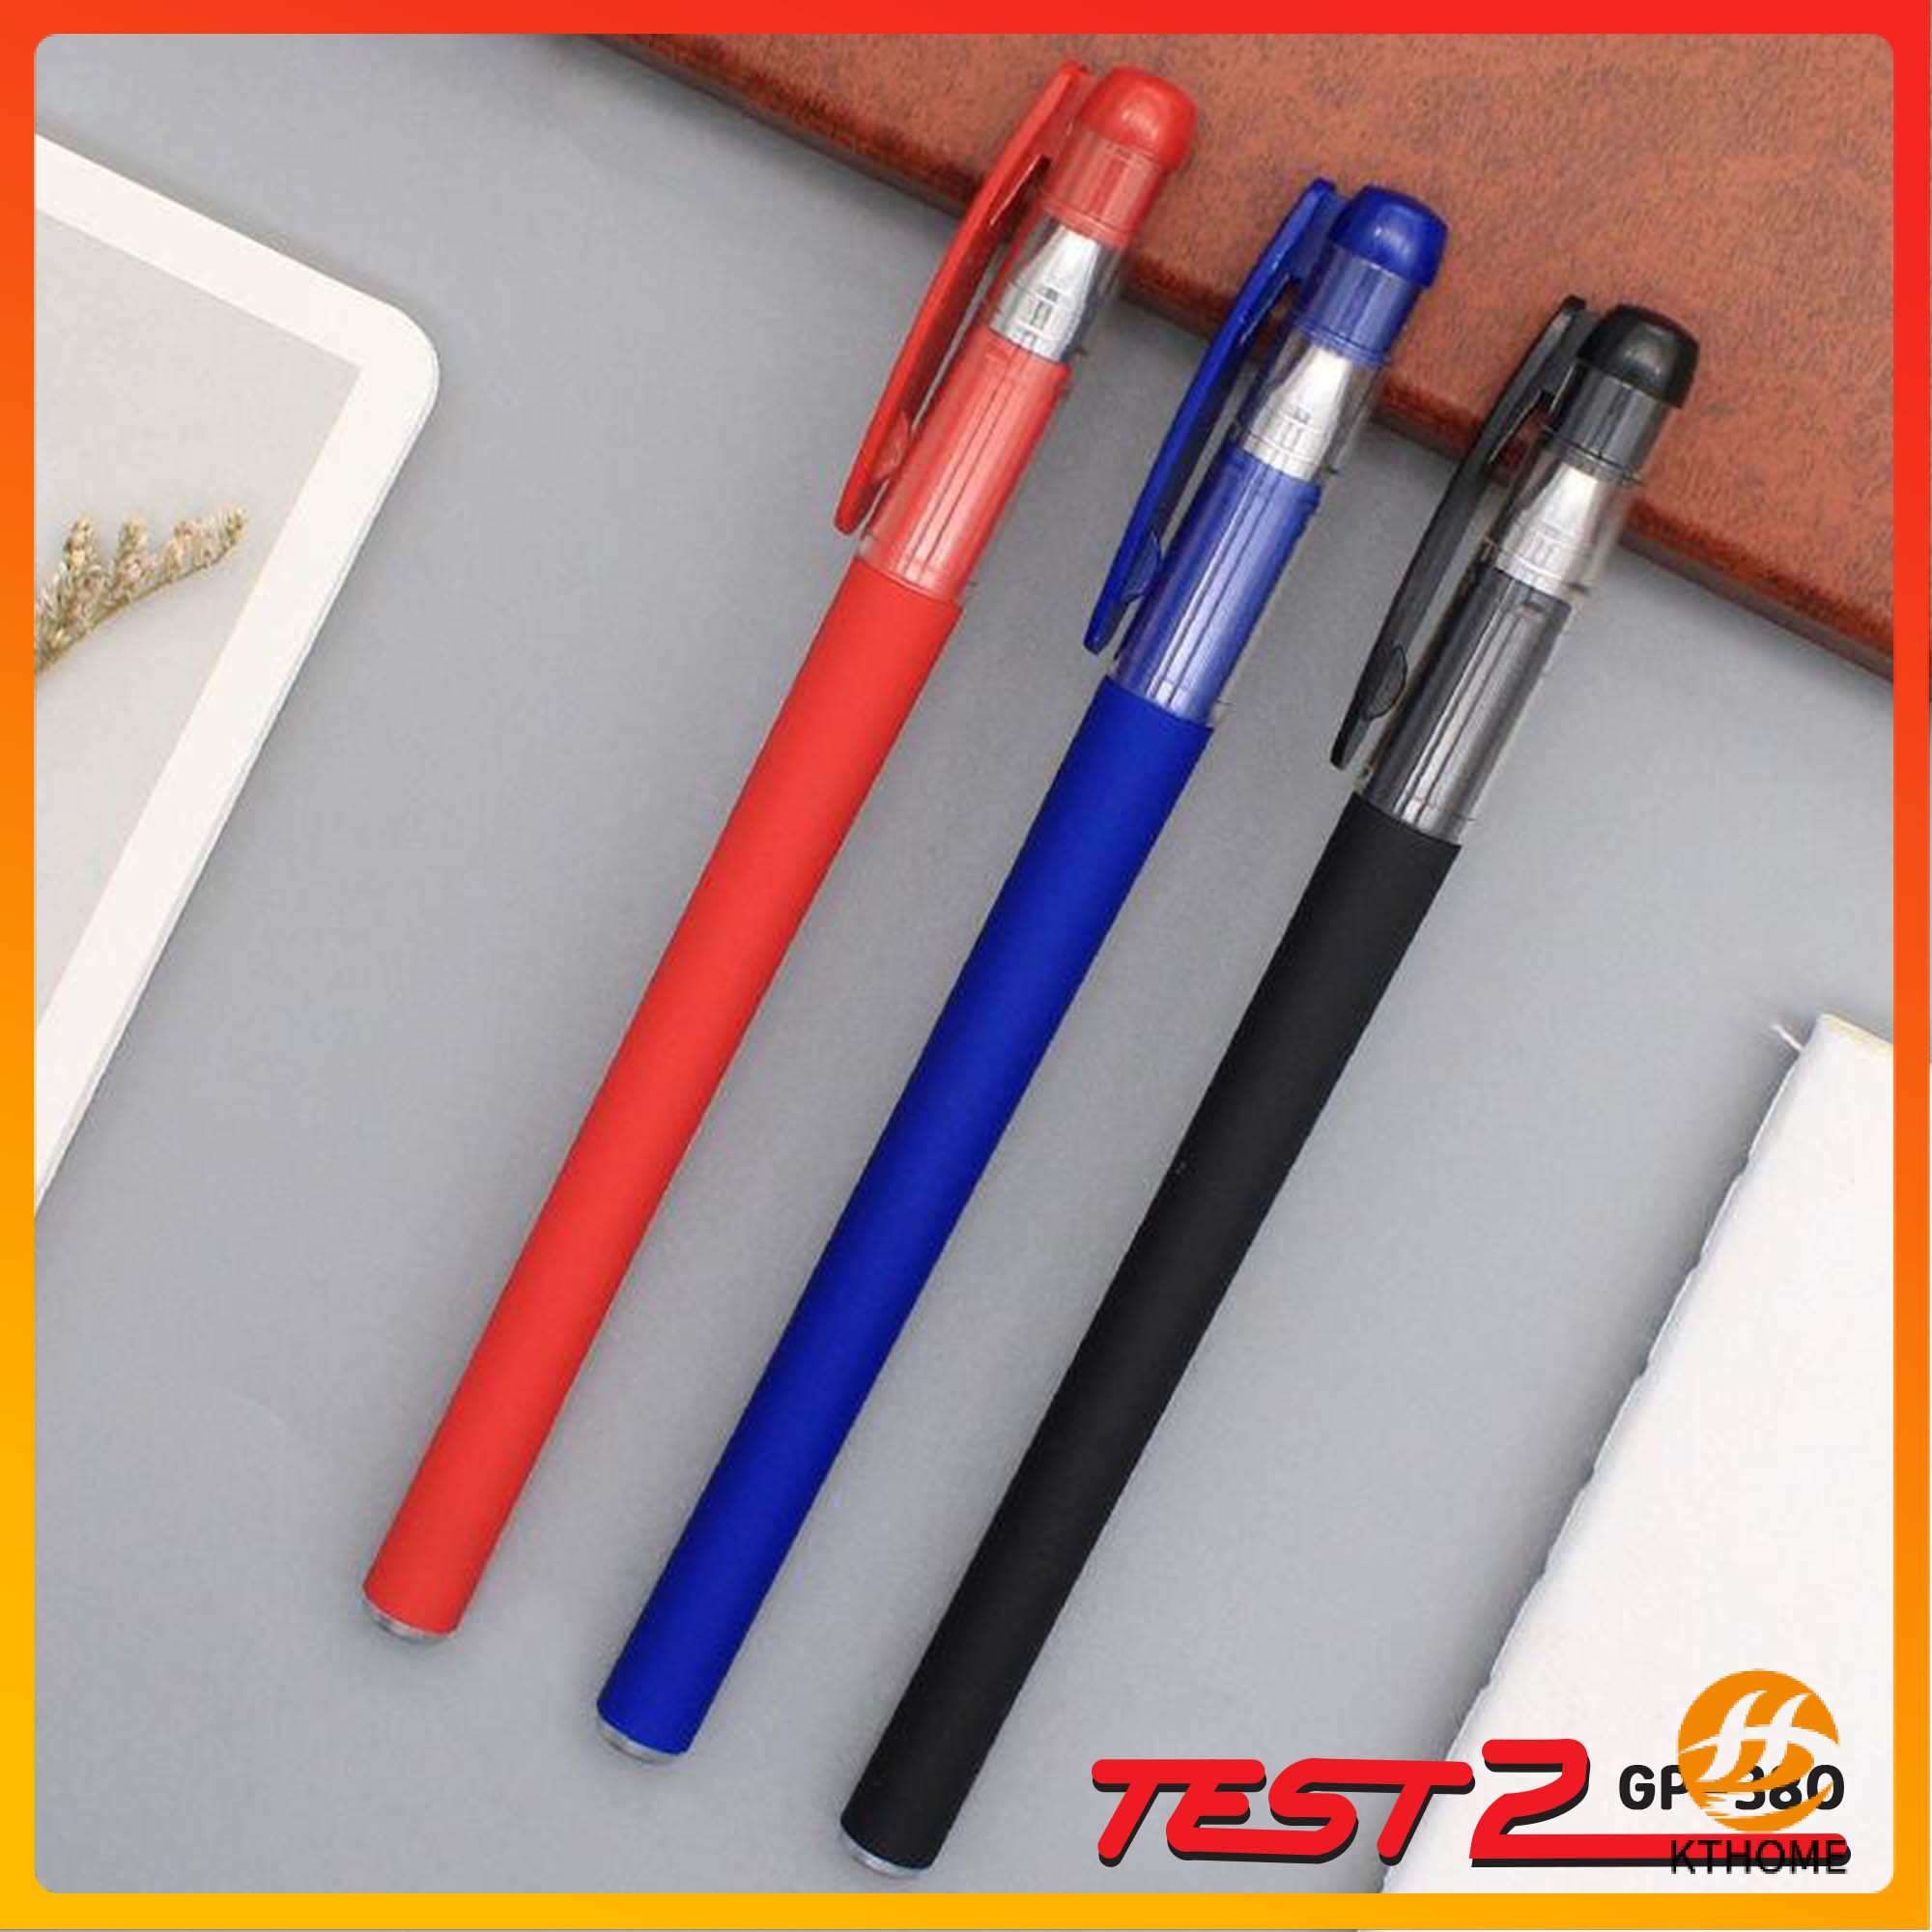 สินค้าขายดี KTHOME ปลีก/ส่ง K50154 ปากกาเจล ปากกาหมึกเจล รุ่นยอดนิยม 0.5 มม. สีน้ำเงิน แดง ดำ ปากกา(10ชิ้น) อุปกรณ์แต่งรถมอเตอร์ไซต์ ไฟหน้า ไฟเลี้ยว เบาะ บังโคนชุดไฟ กาฟหน้า กาฟหลัง สินค้าขายดีและมีคุณภาพที่รถคุณต้องมี